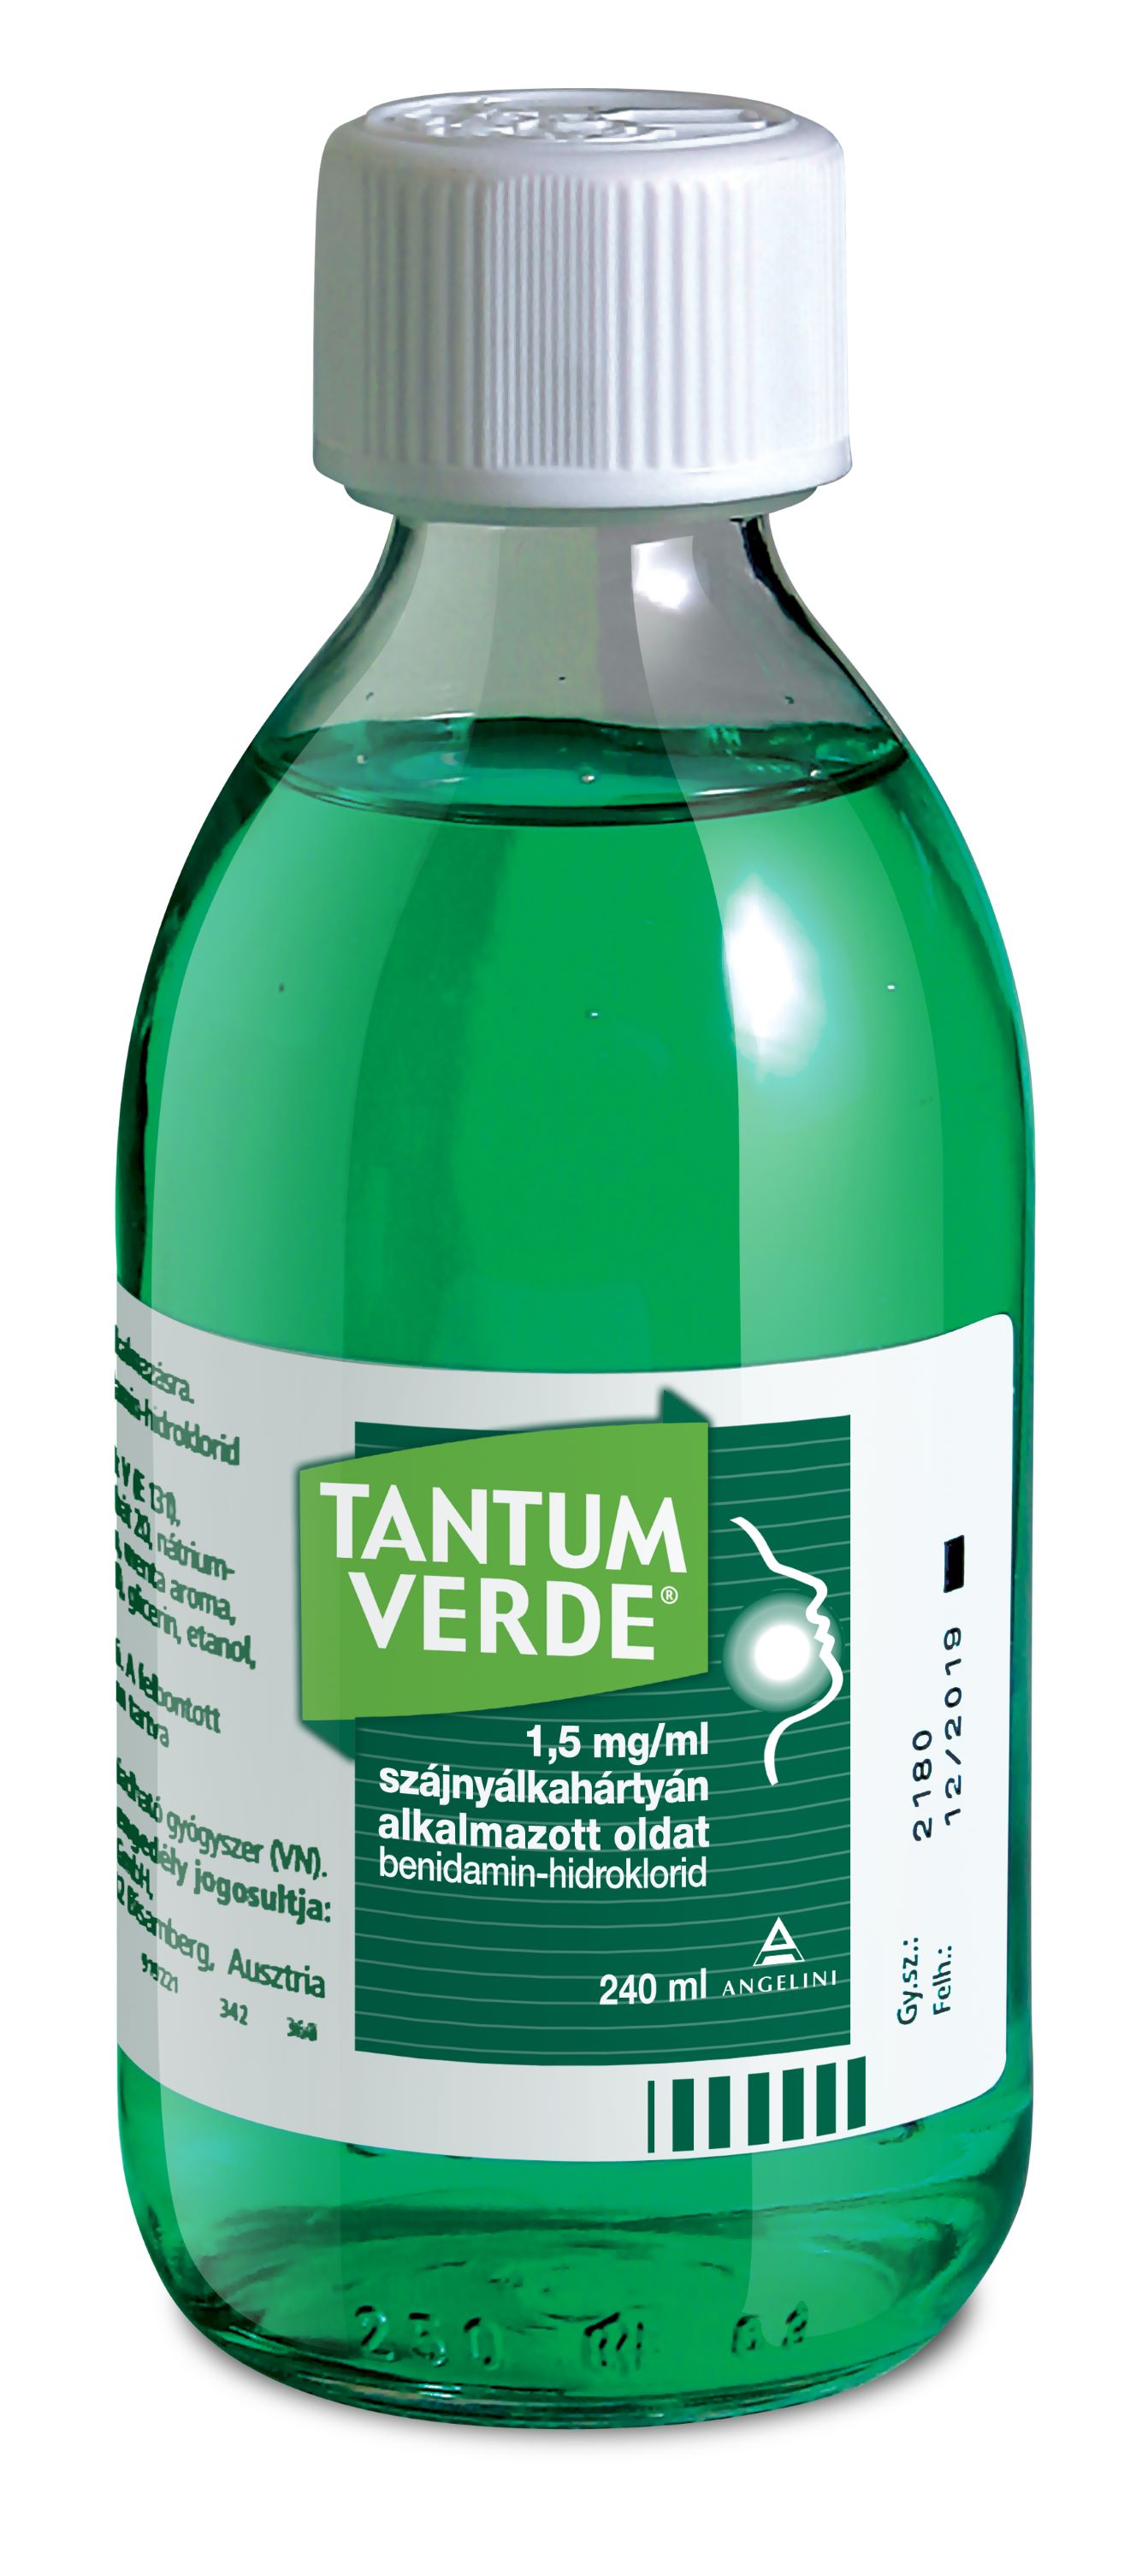 Tantum Verde 1,5 mg/ml oldat